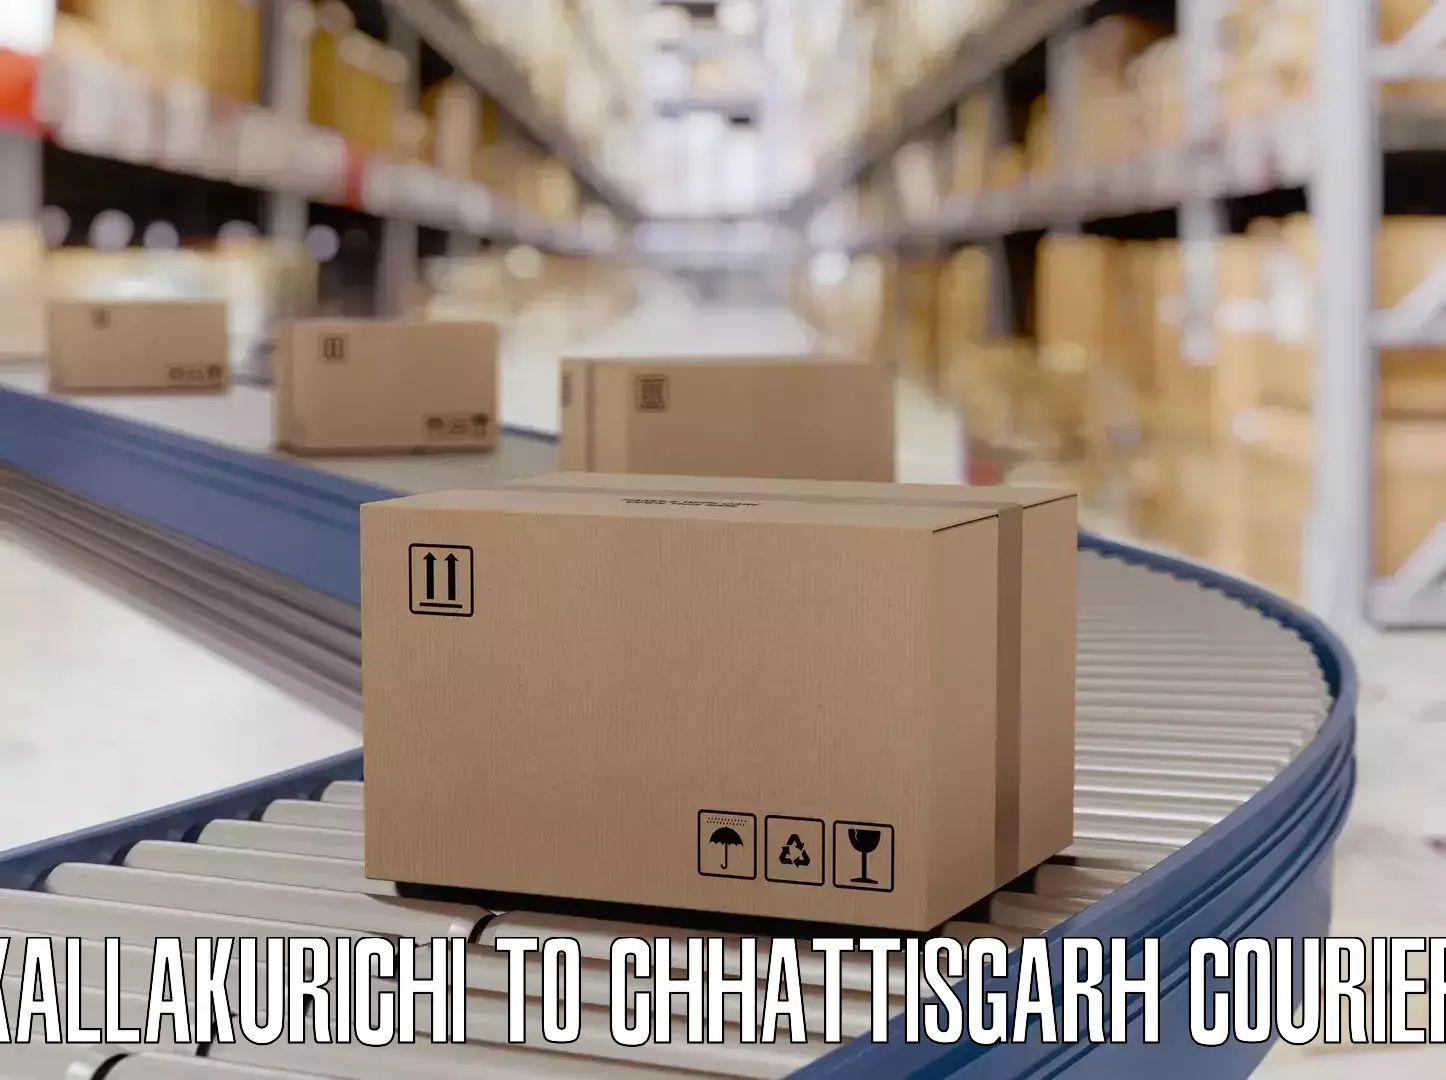 Luggage delivery app Kallakurichi to Pithora